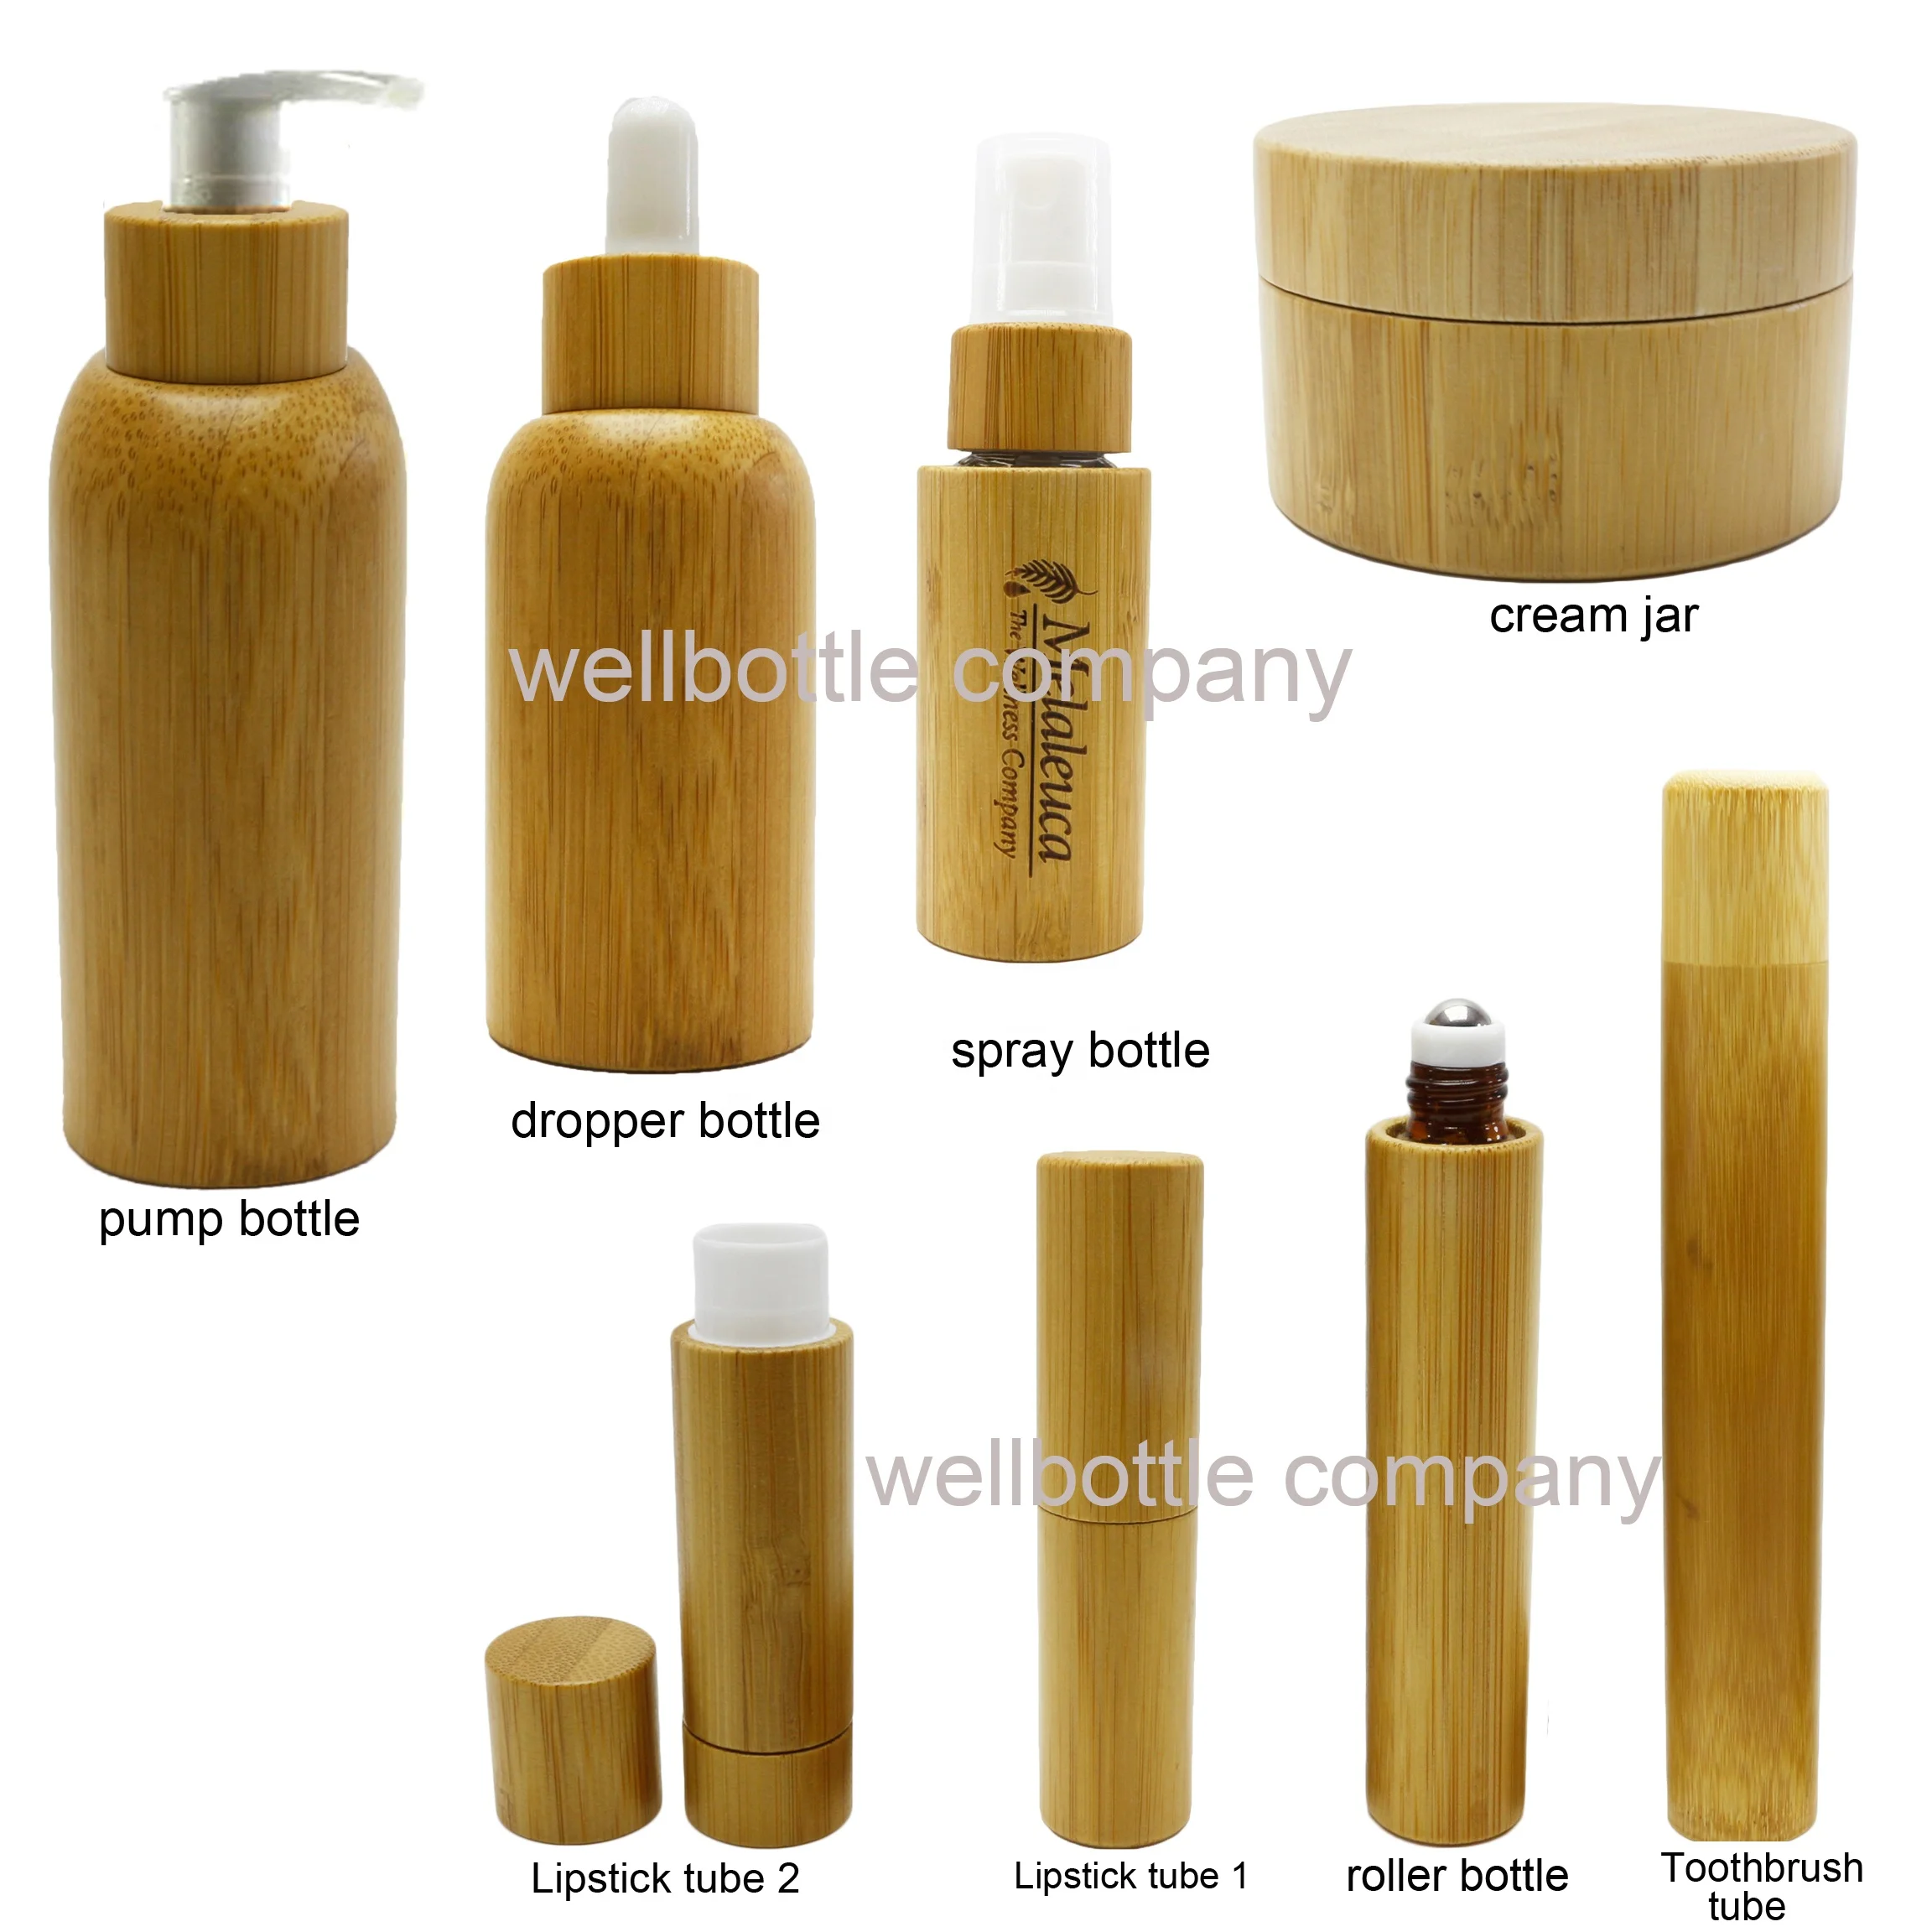 
Бамбуковая косметическая упаковка стеклянная банка для крема бамбуковая бутылка для жидкости для ухода за кожей BJ099E 